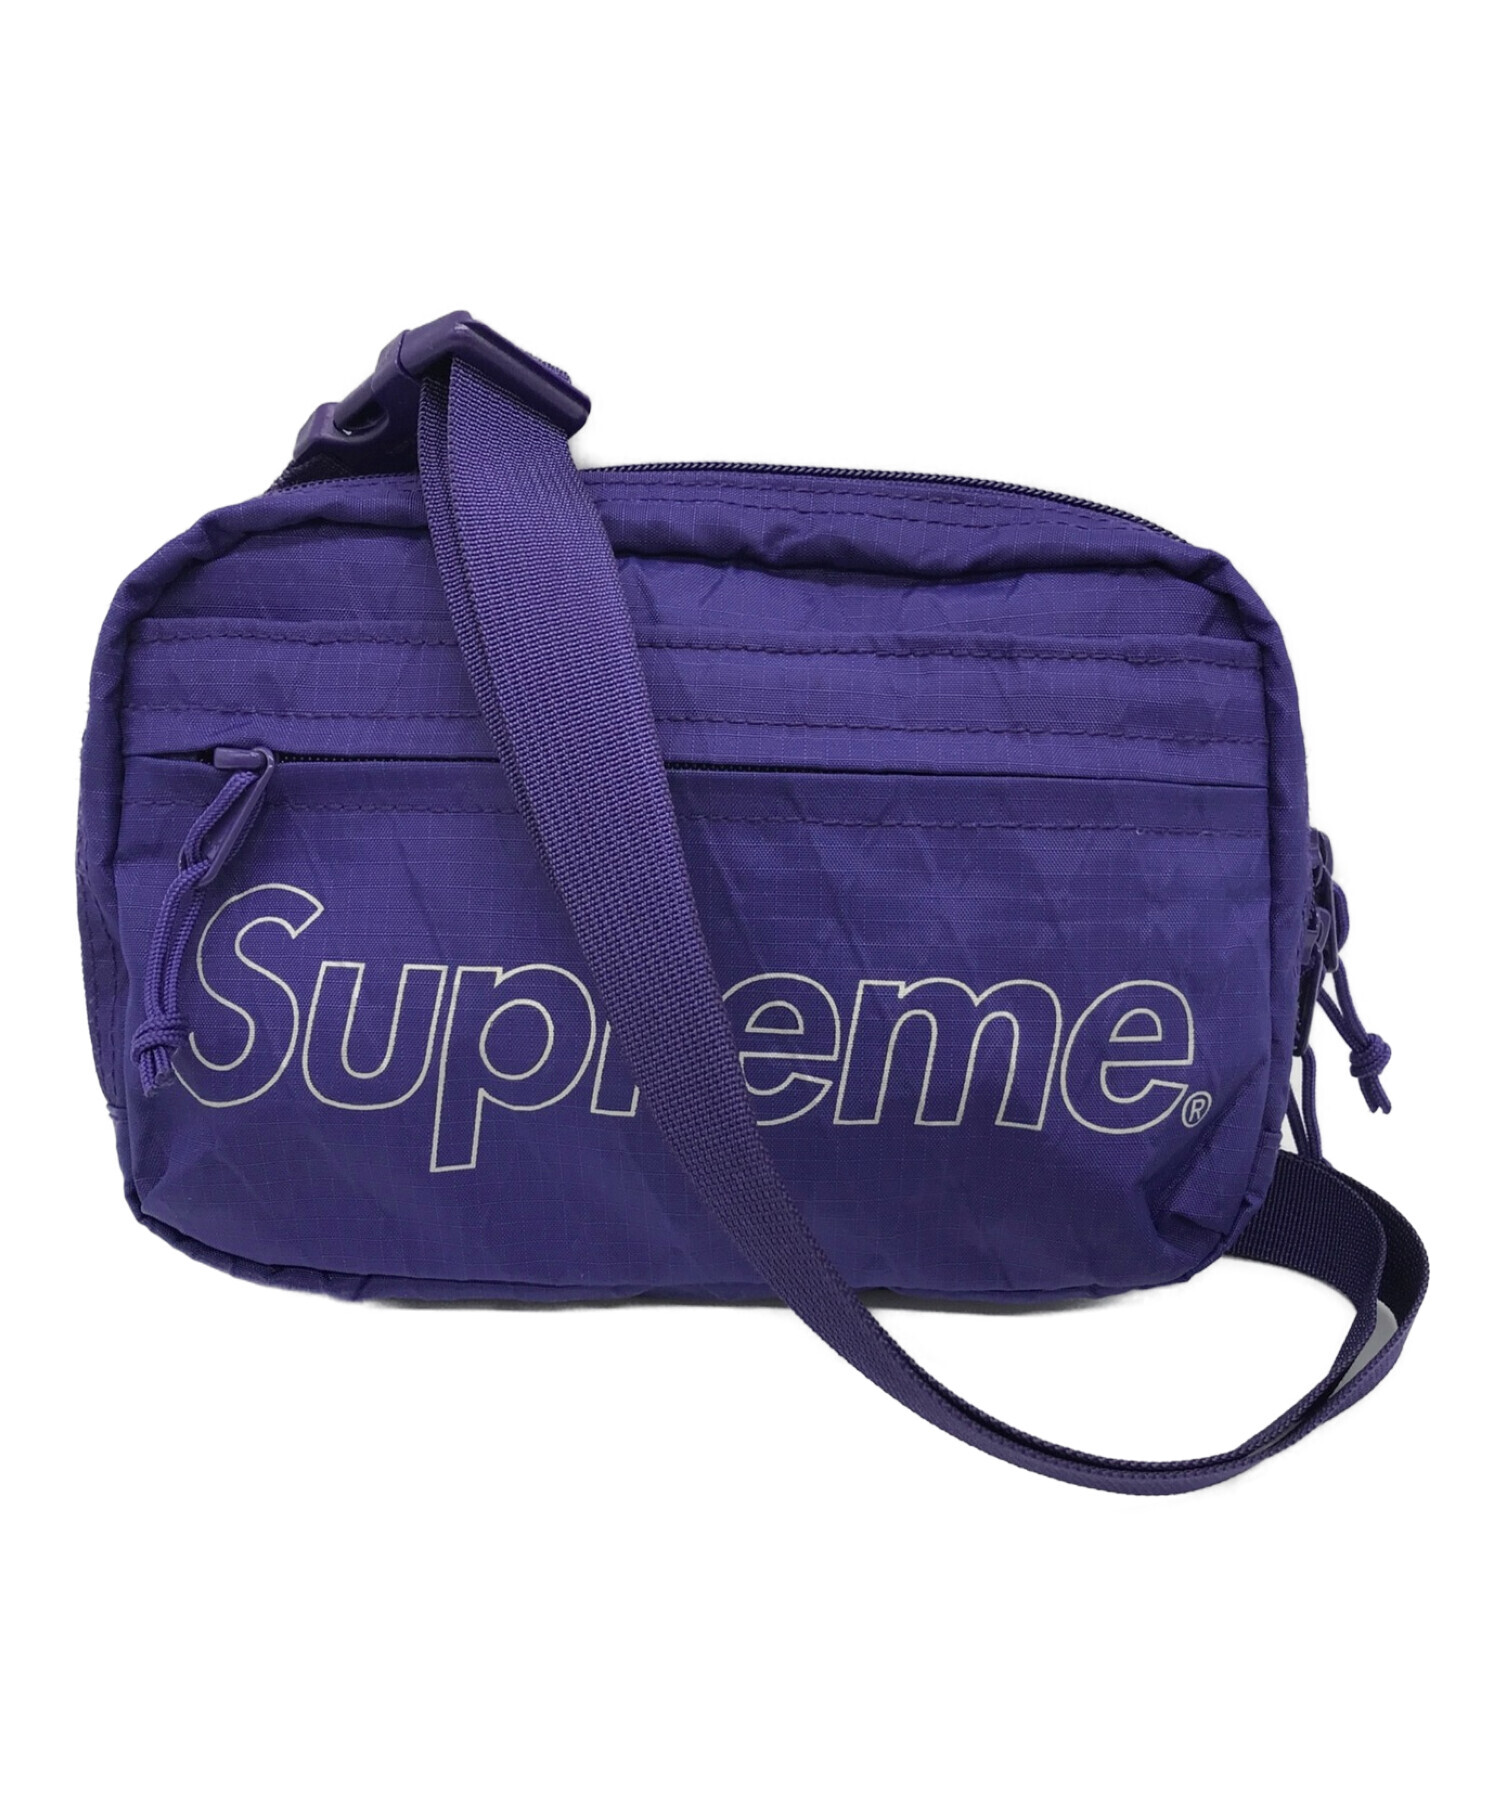 supreme 紫 ショルダーバッグ